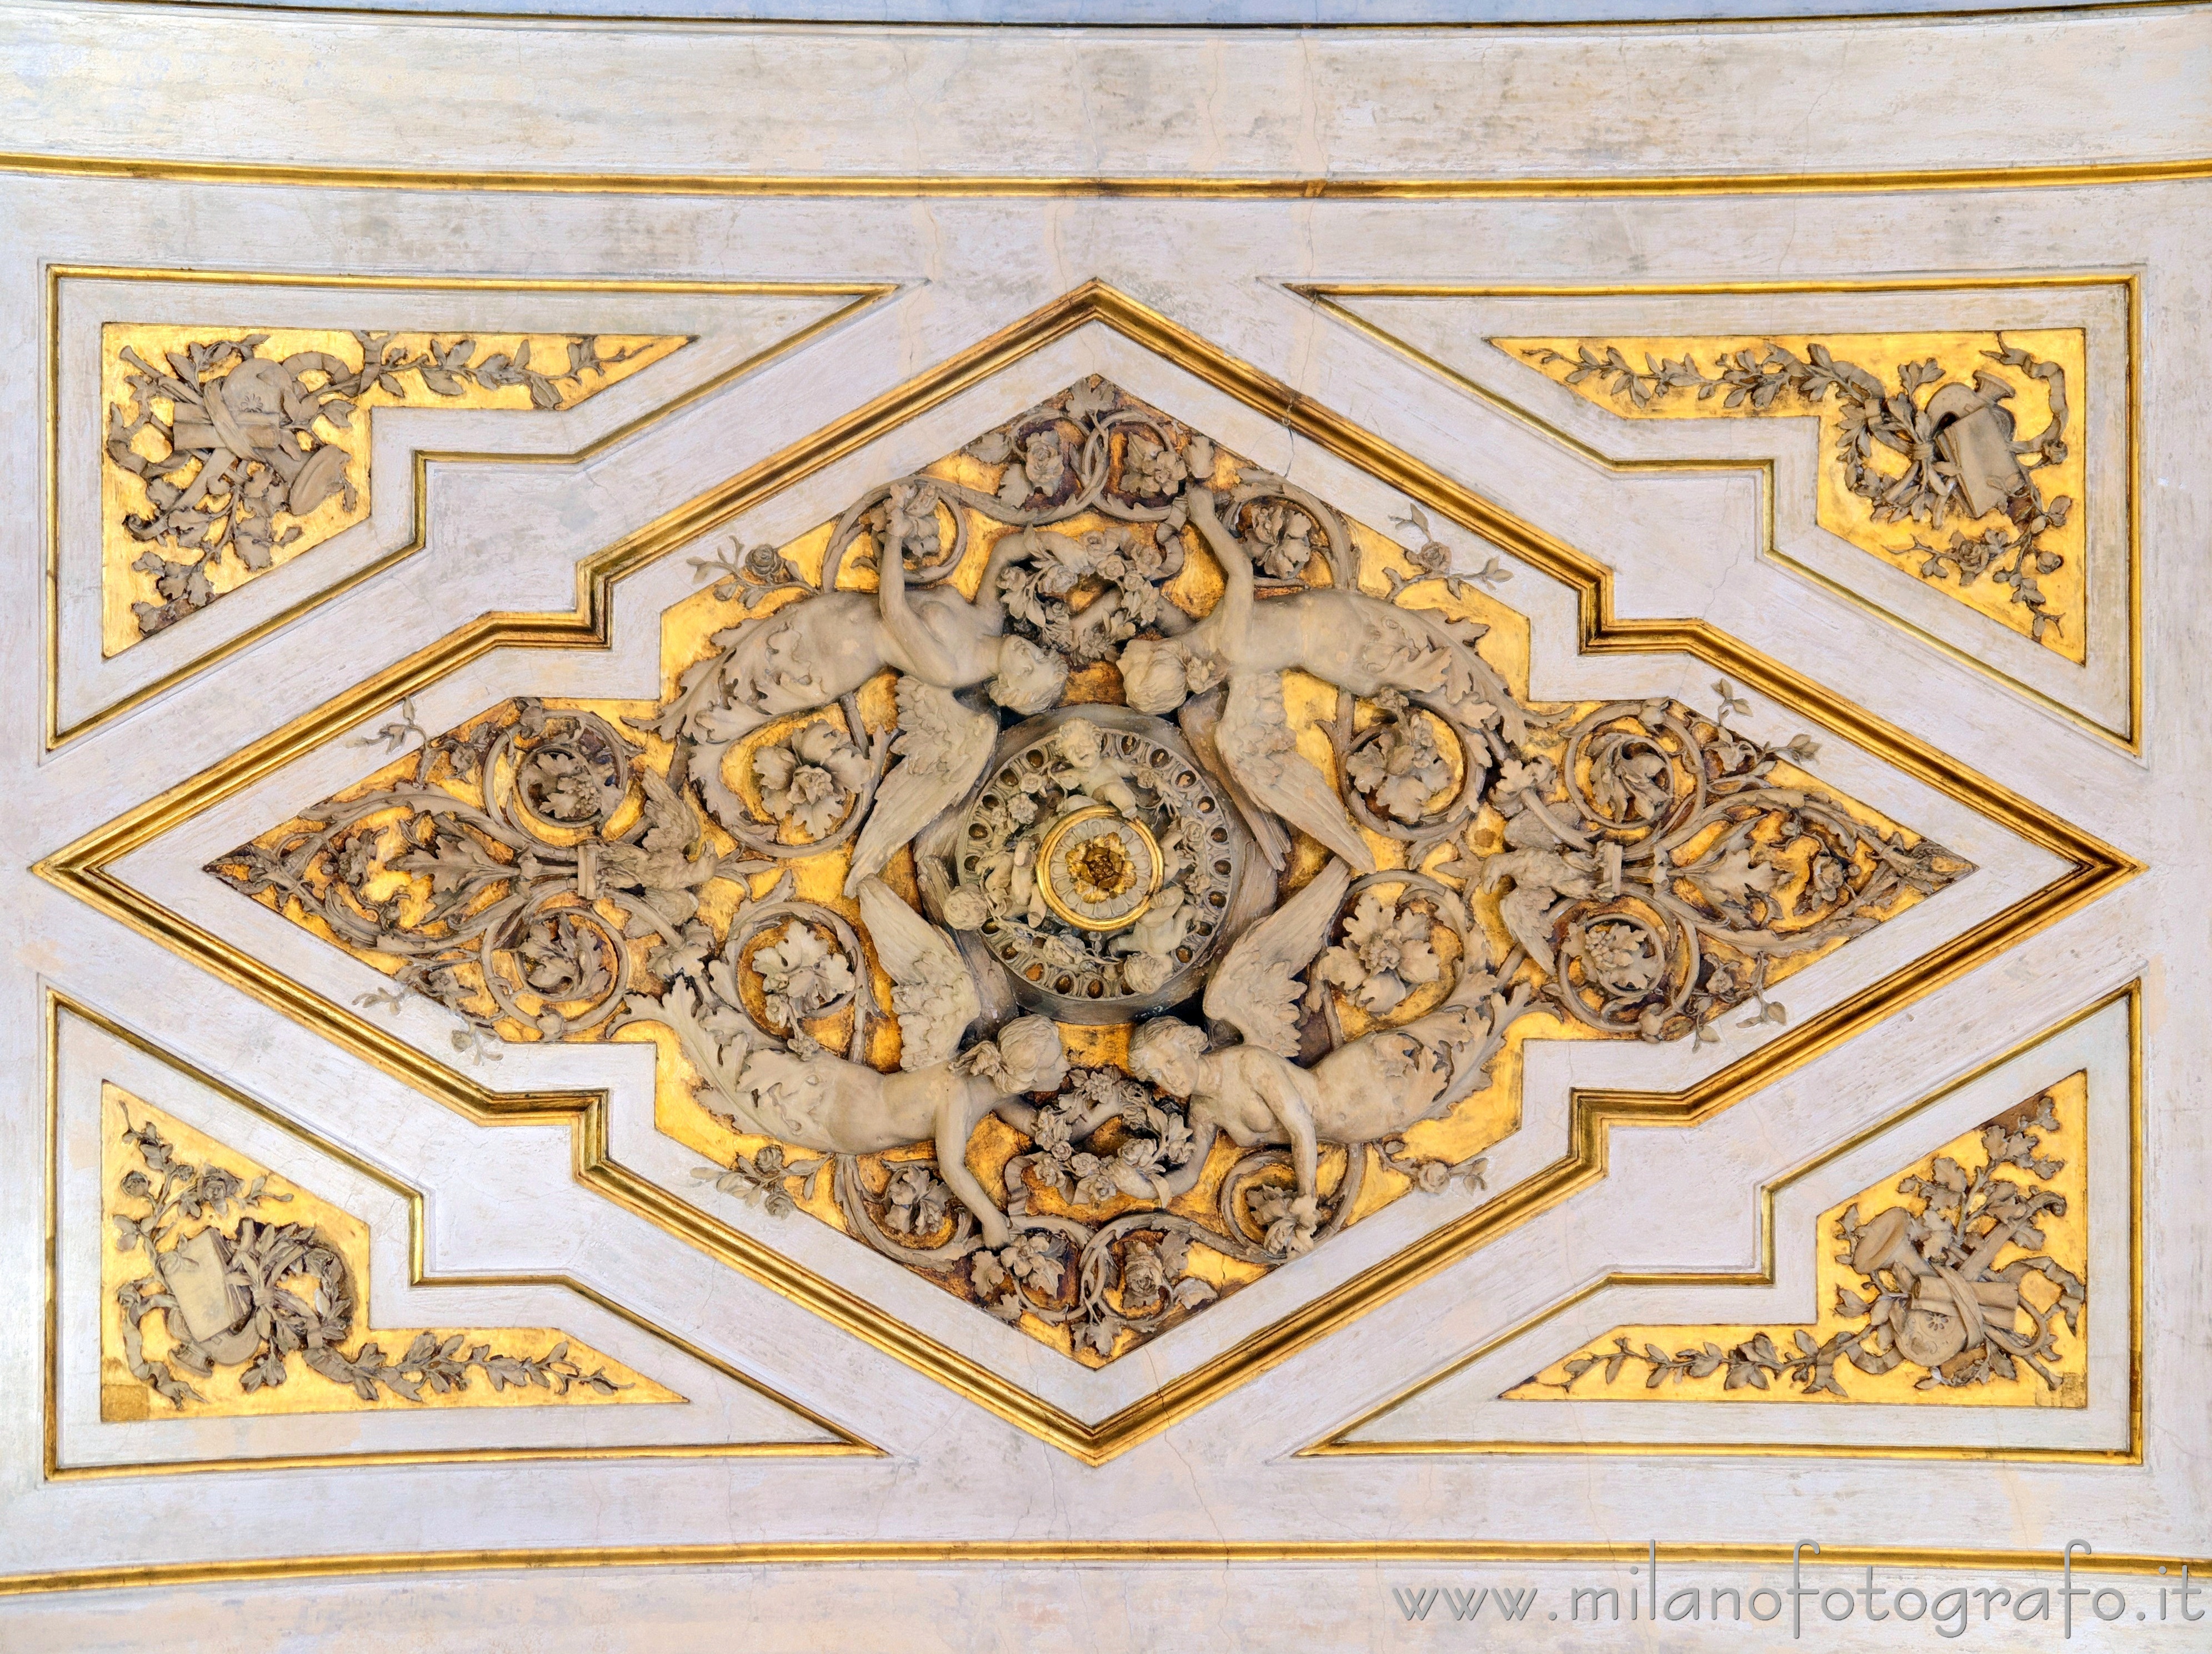 Milano: Stucchi al centro del soffitto del Salone Napoleonico di Palazzo Serbelloni - Milano